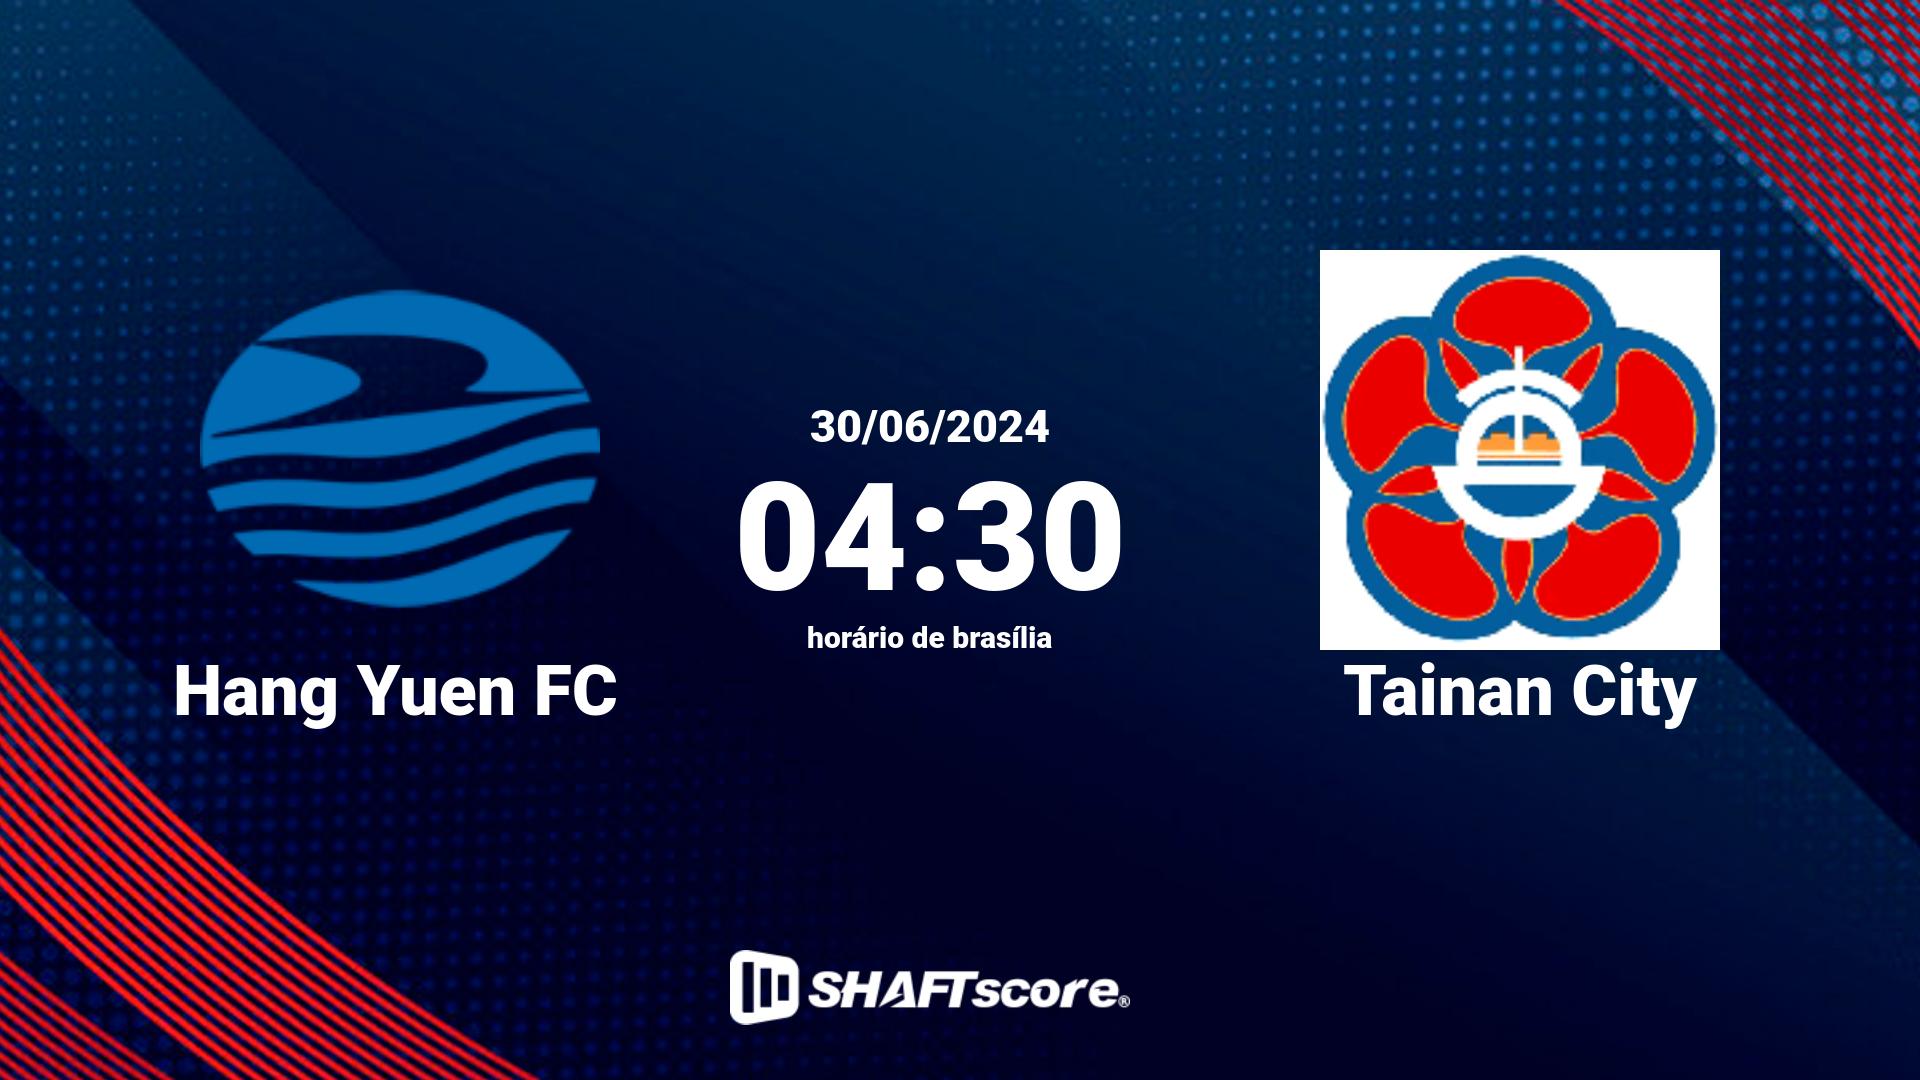 Estatísticas do jogo Hang Yuen FC vs Tainan City 30.06 04:30